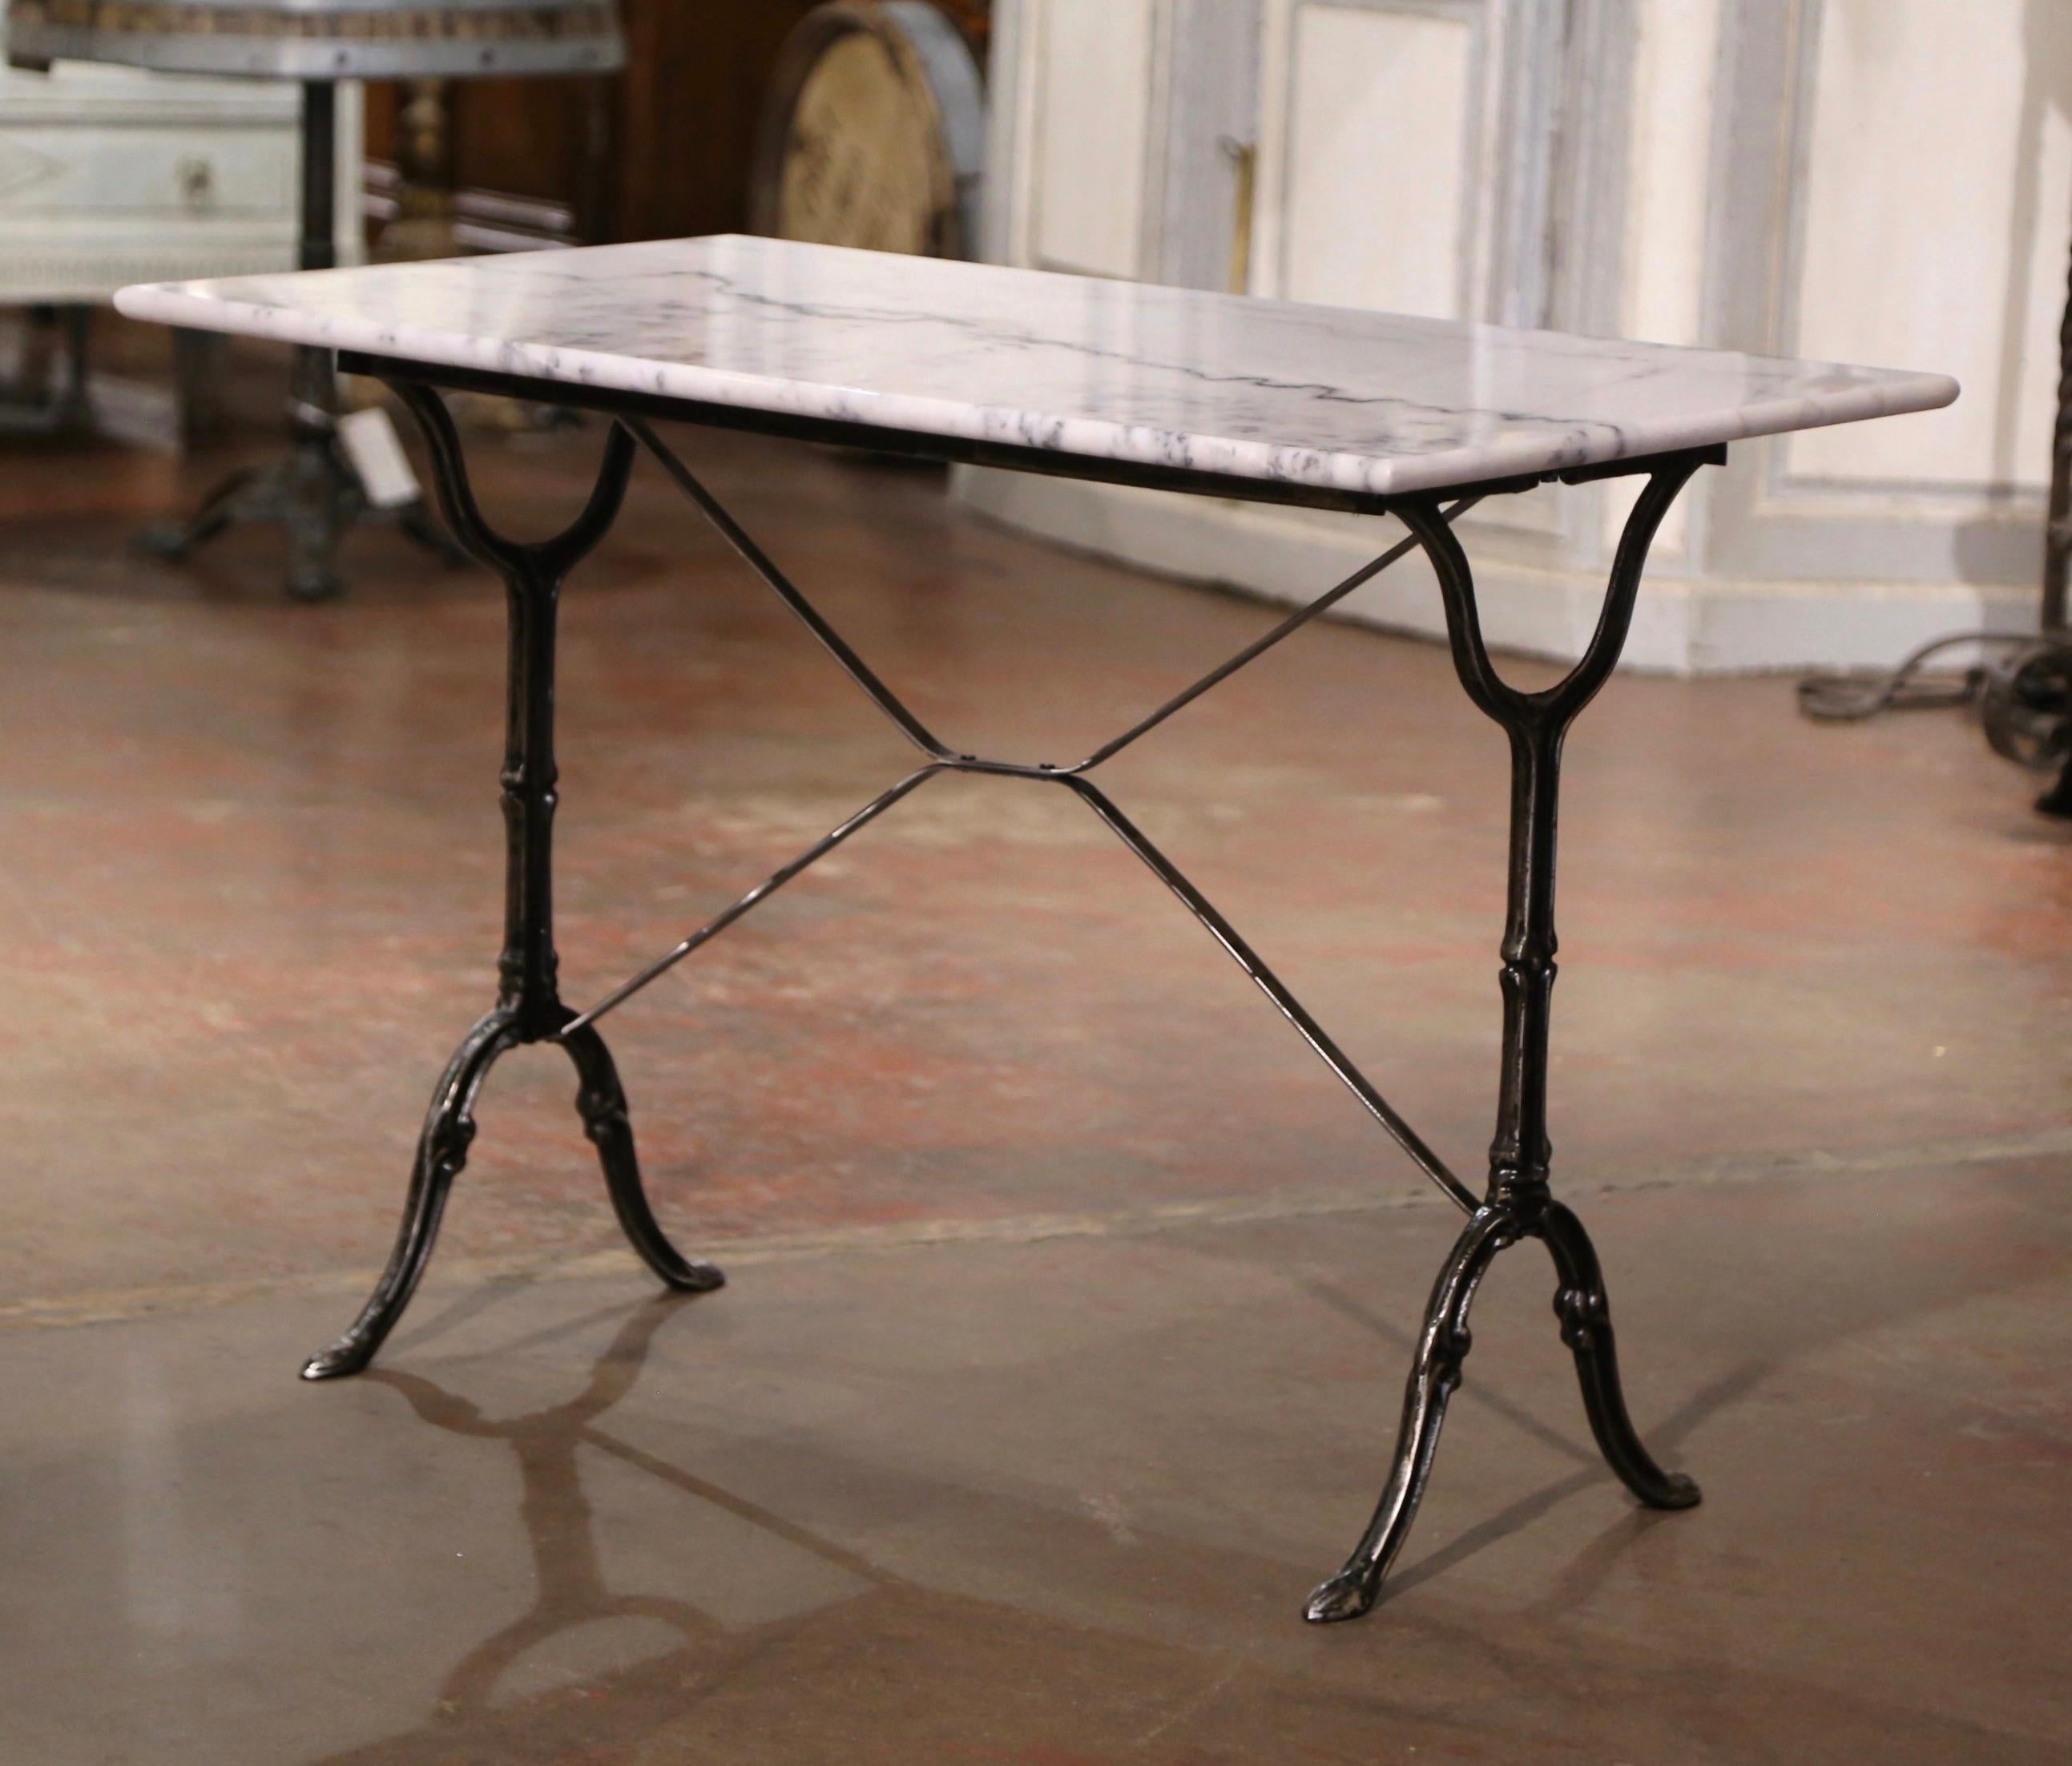 Fabriquée en France vers 1960, cette table ancienne en fonte repose sur une base à tréteaux avec d'élégants pieds à volutes se terminant par des pieds en sabot, et réunis par une double traverse décorative. La pièce est habillée du plateau